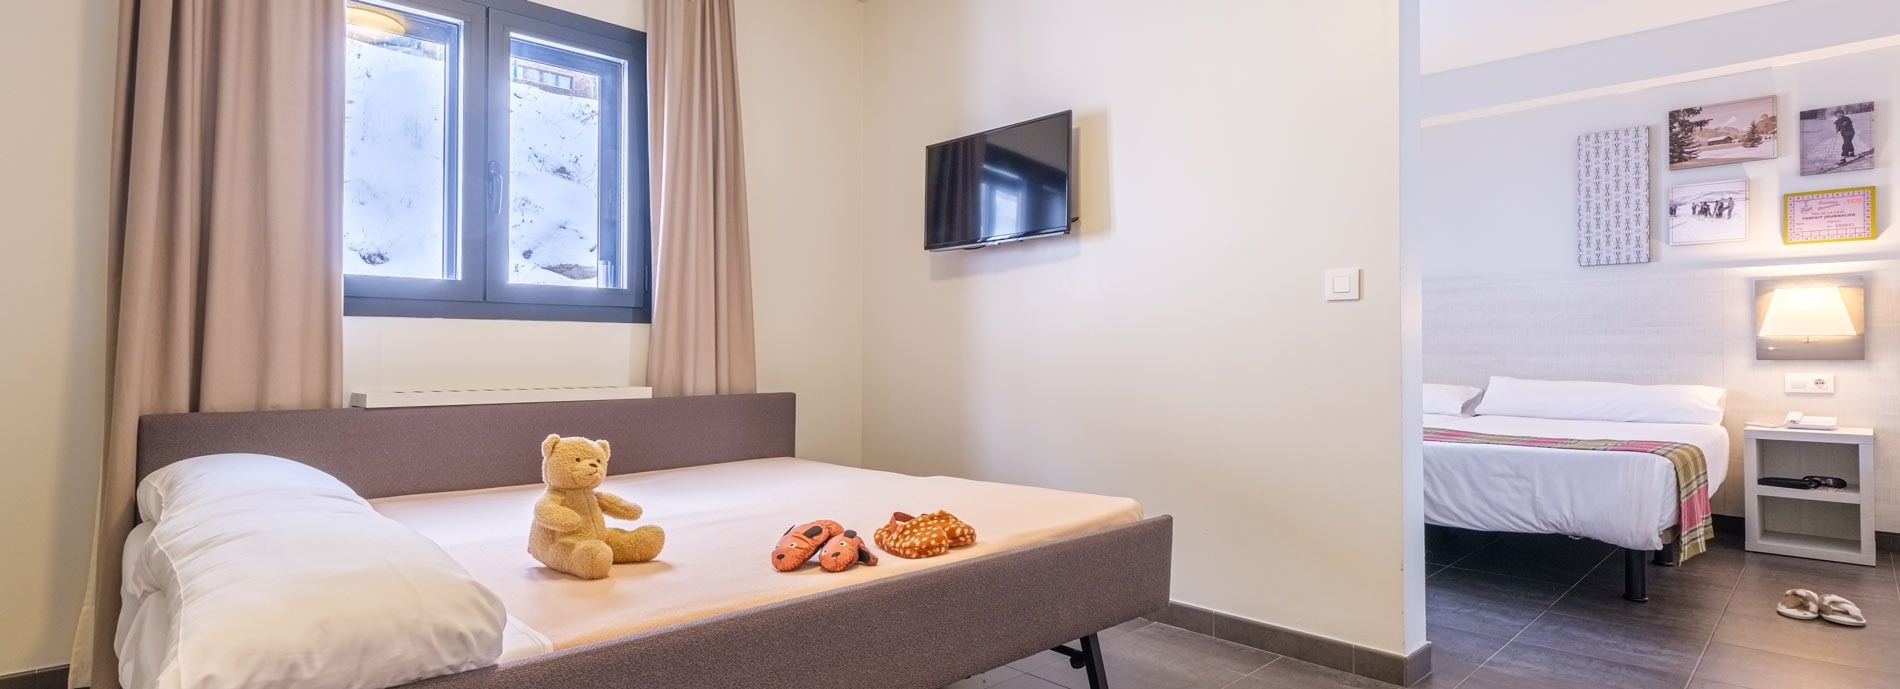 una habitació d' hotel amb dues camas i una televisió